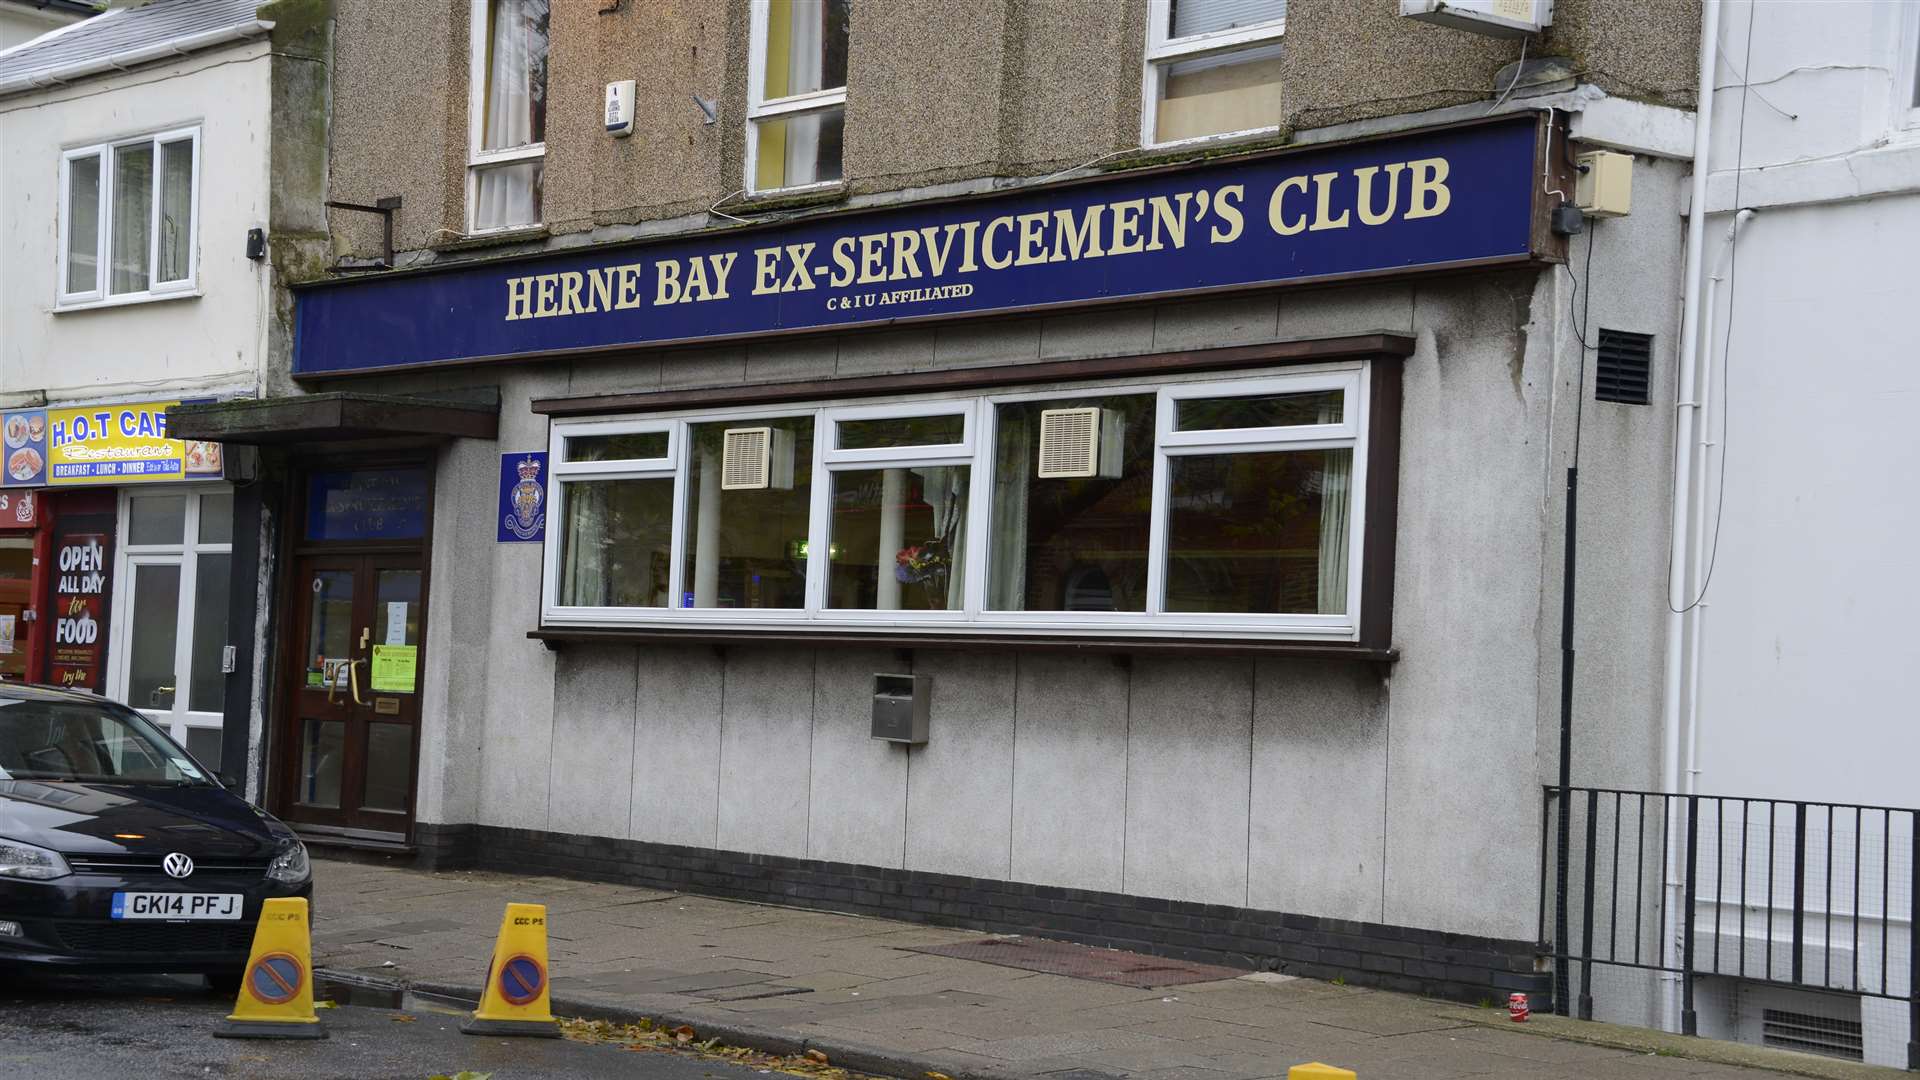 Herne Bay's Ex-Servicemen’s Club